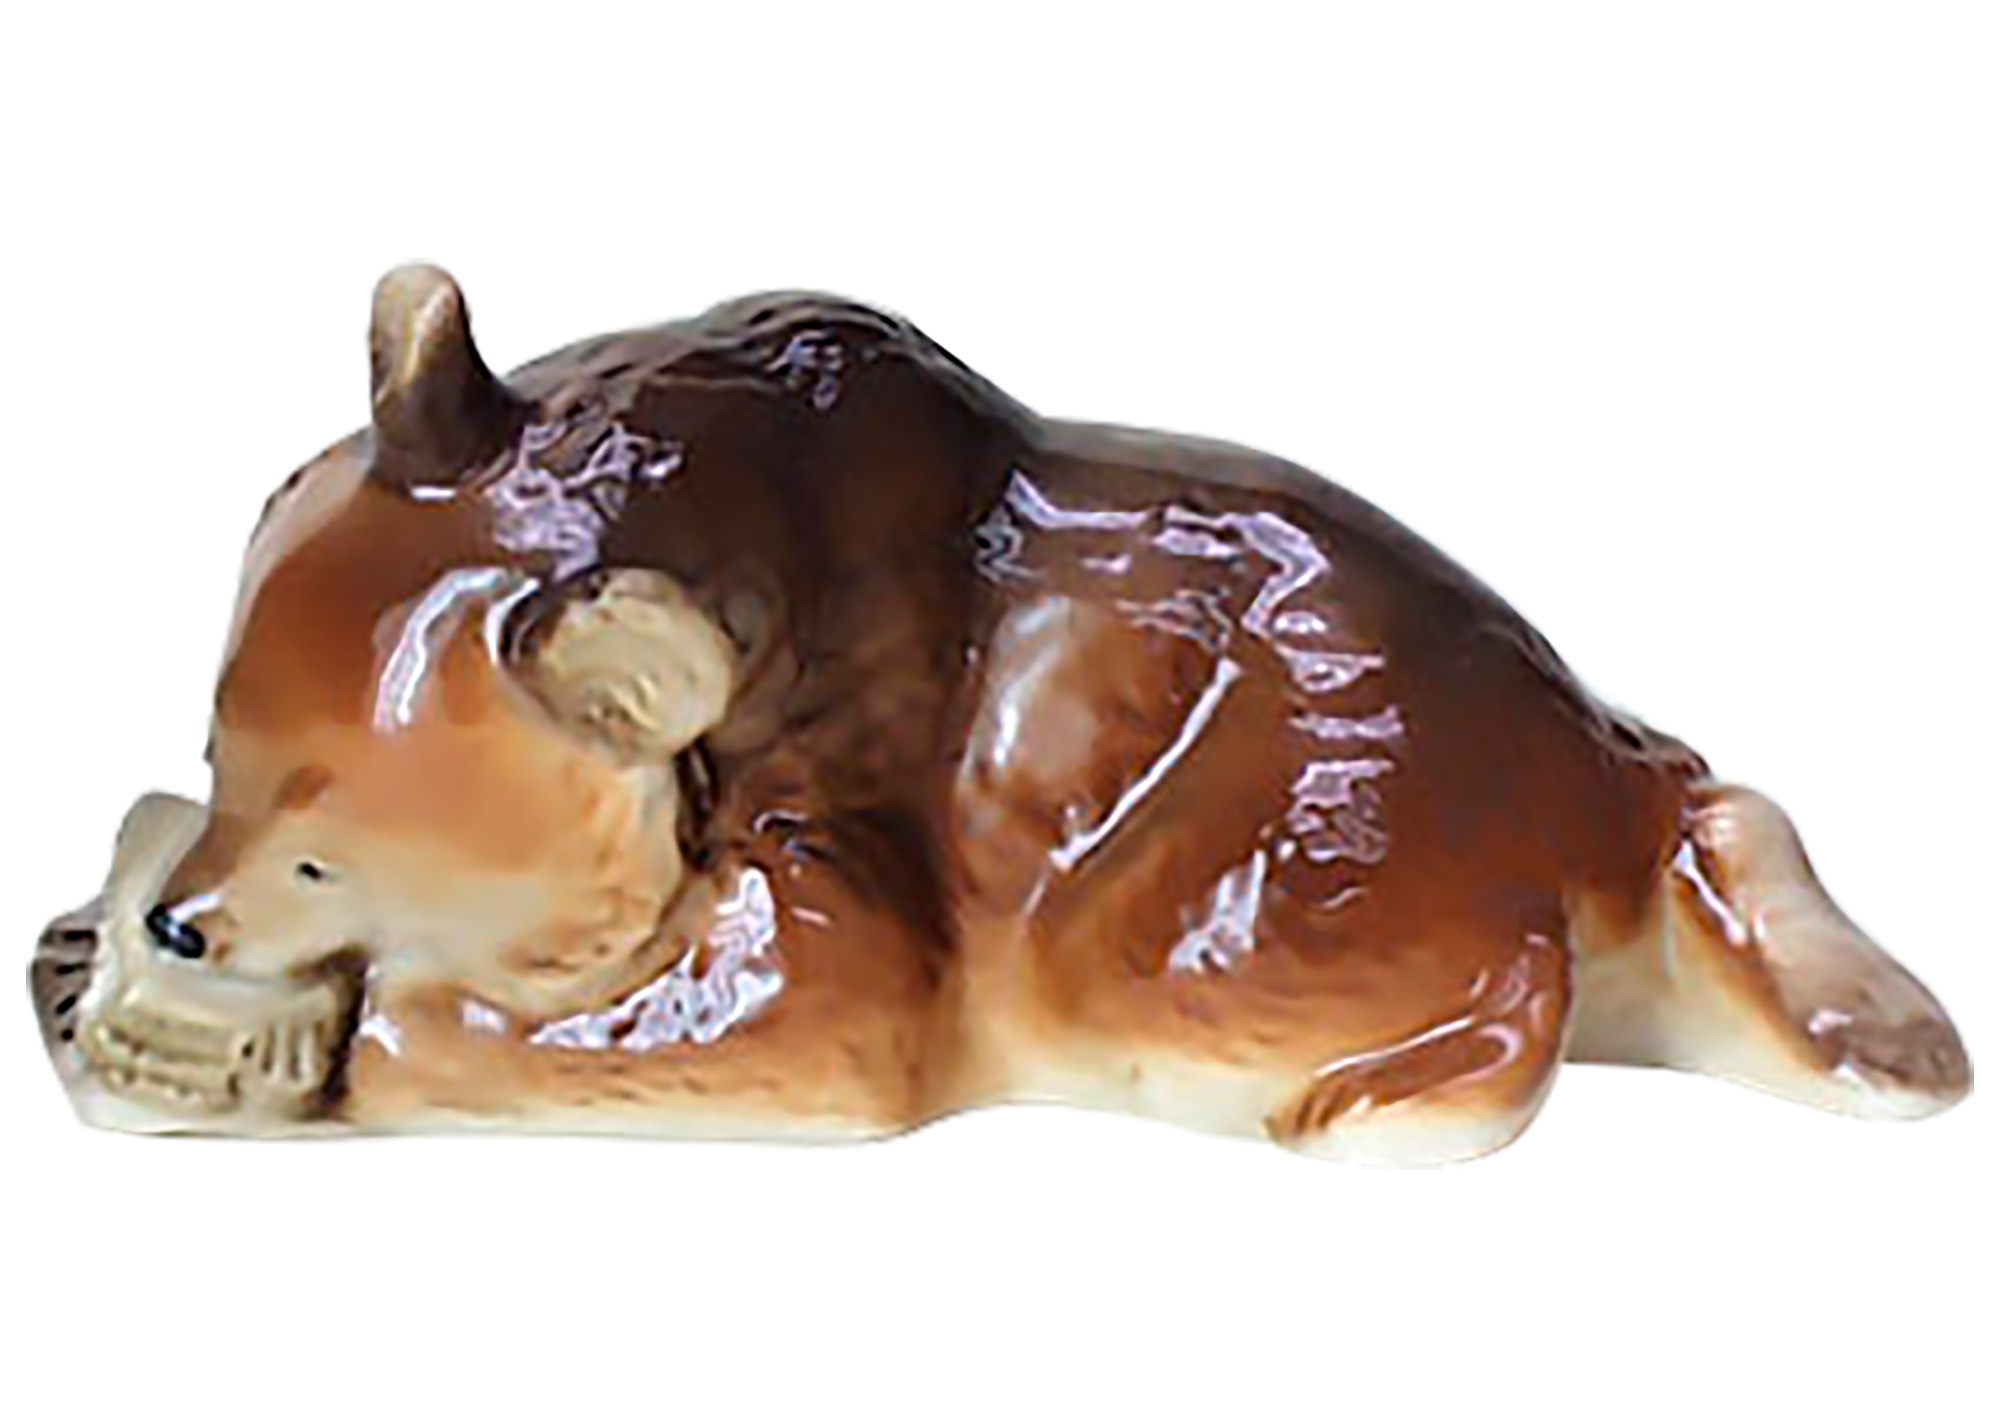 Buy Фарфоровая статуэтка "Медвежонок с сотами" at GoldenCockerel.com